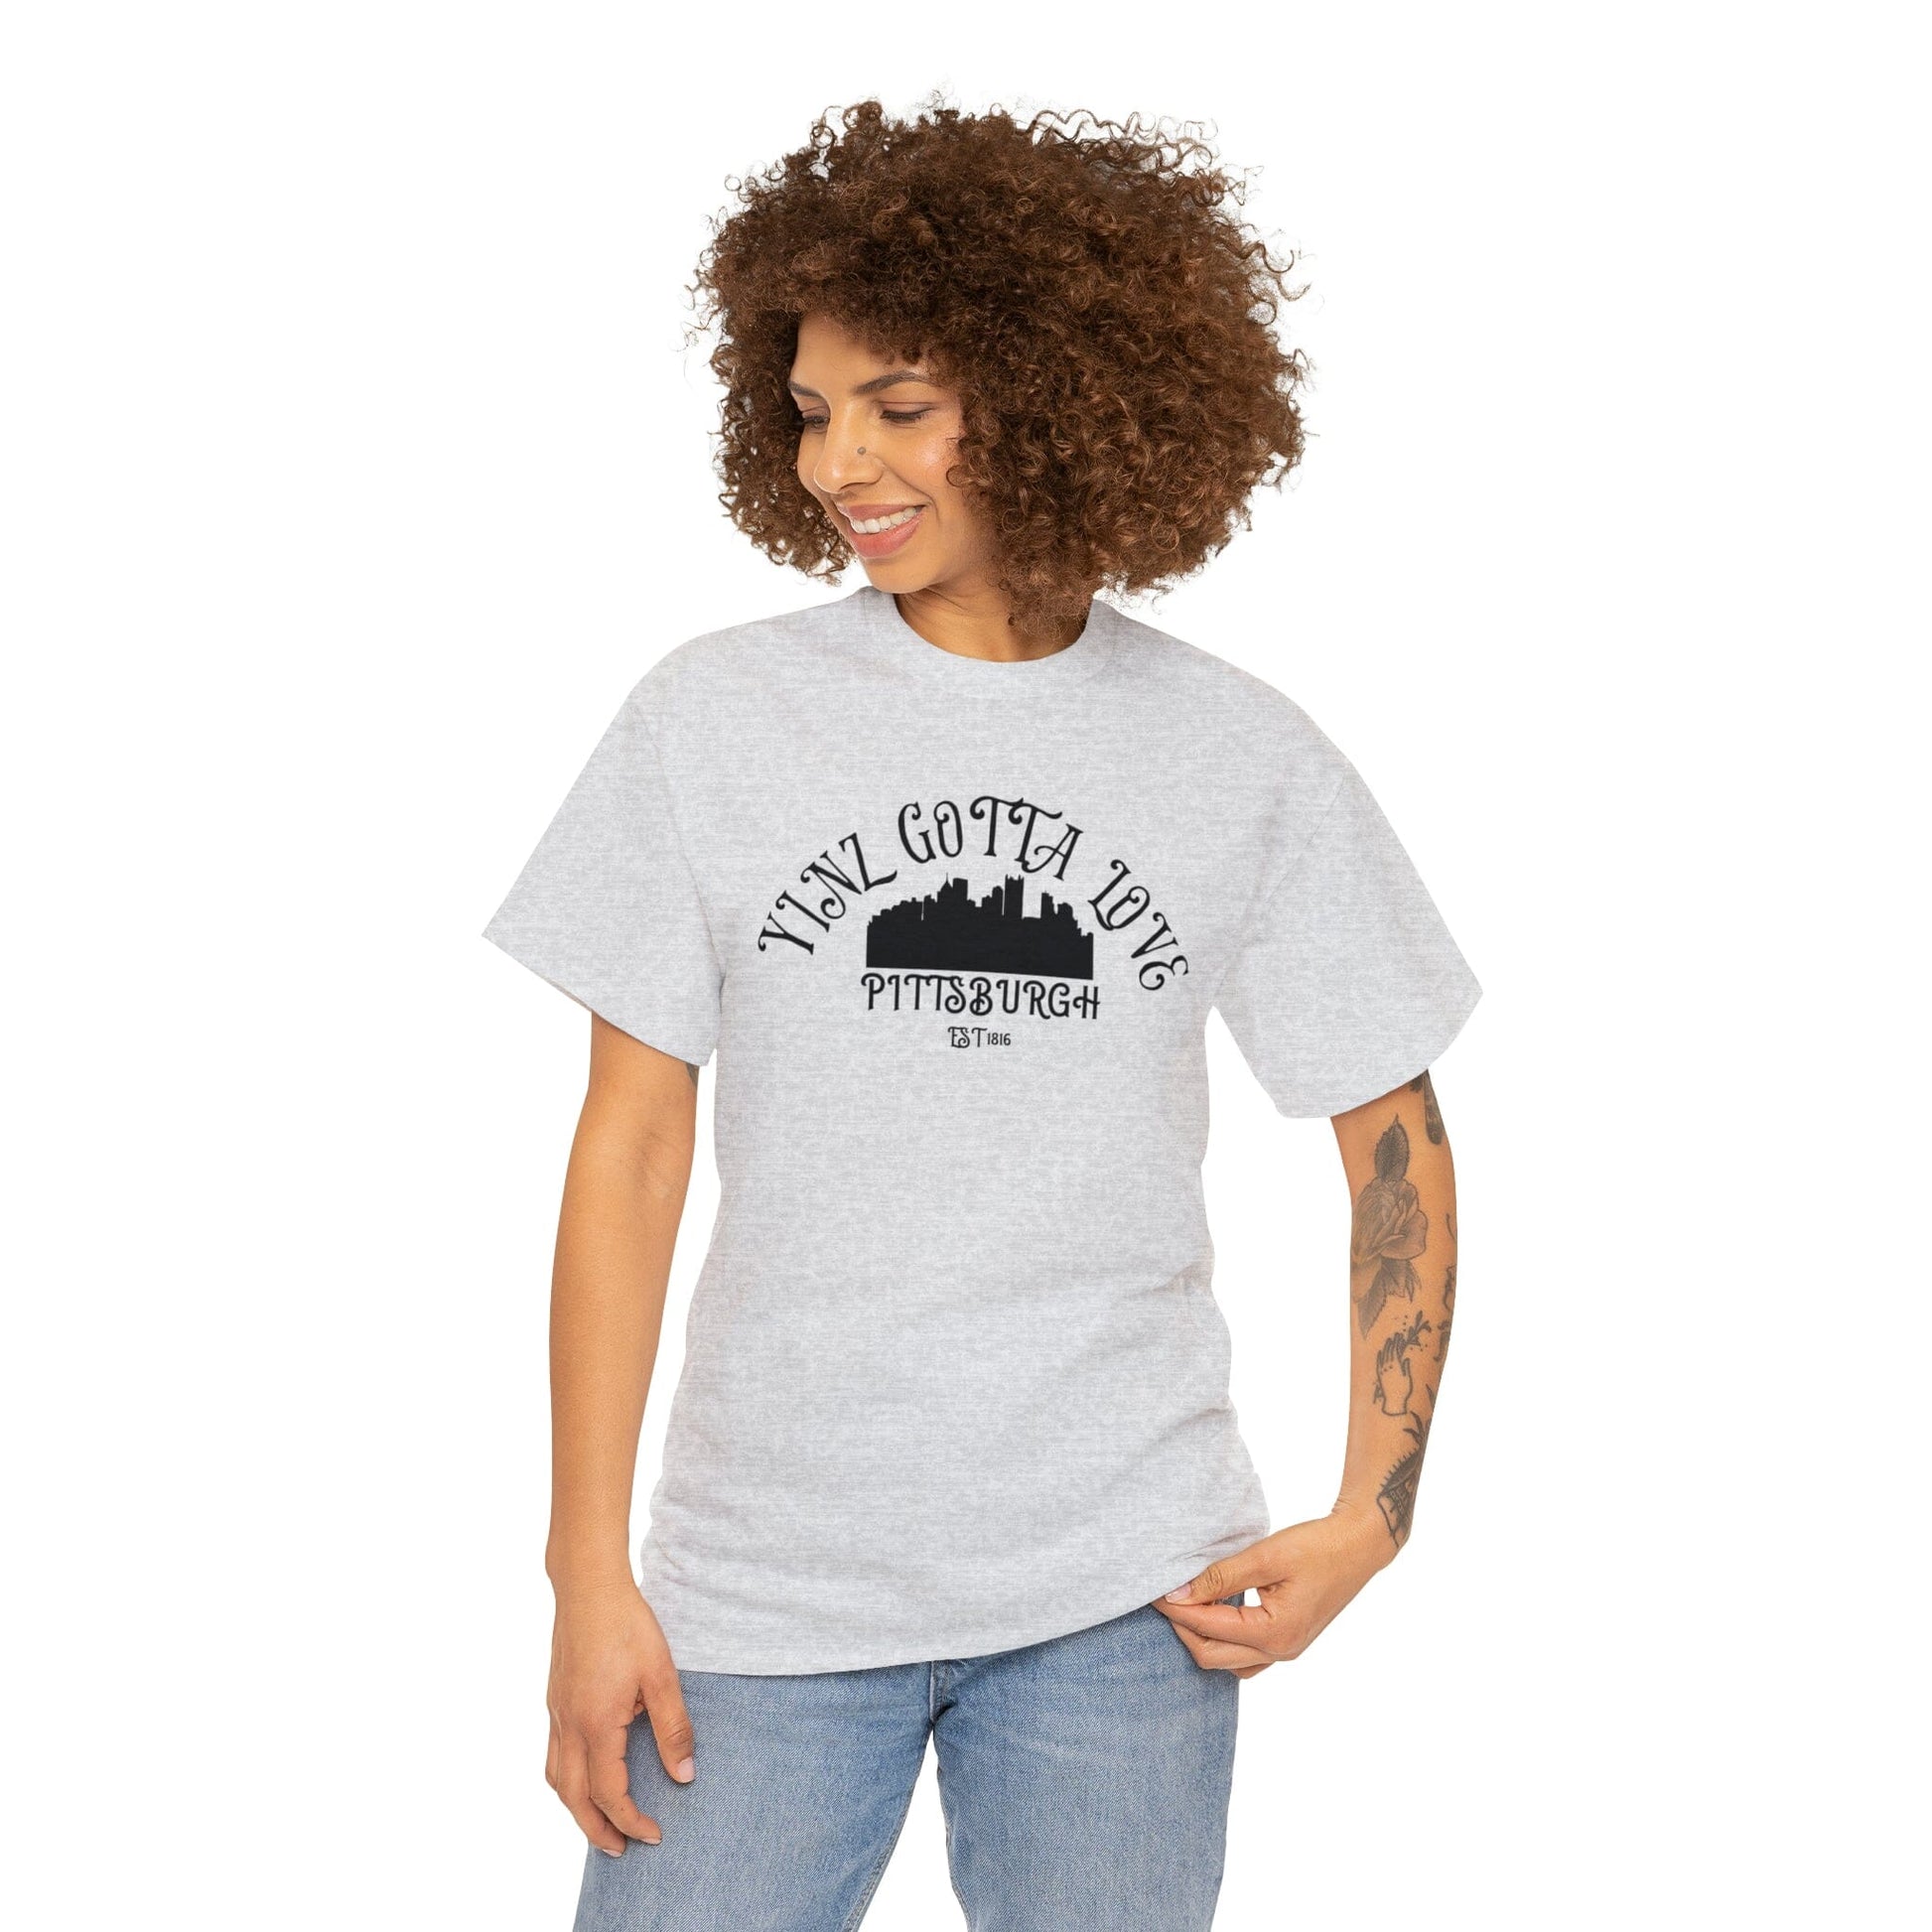 Yinz Gotta Love Pittsburgh T-Shirt T-Shirt Printify 